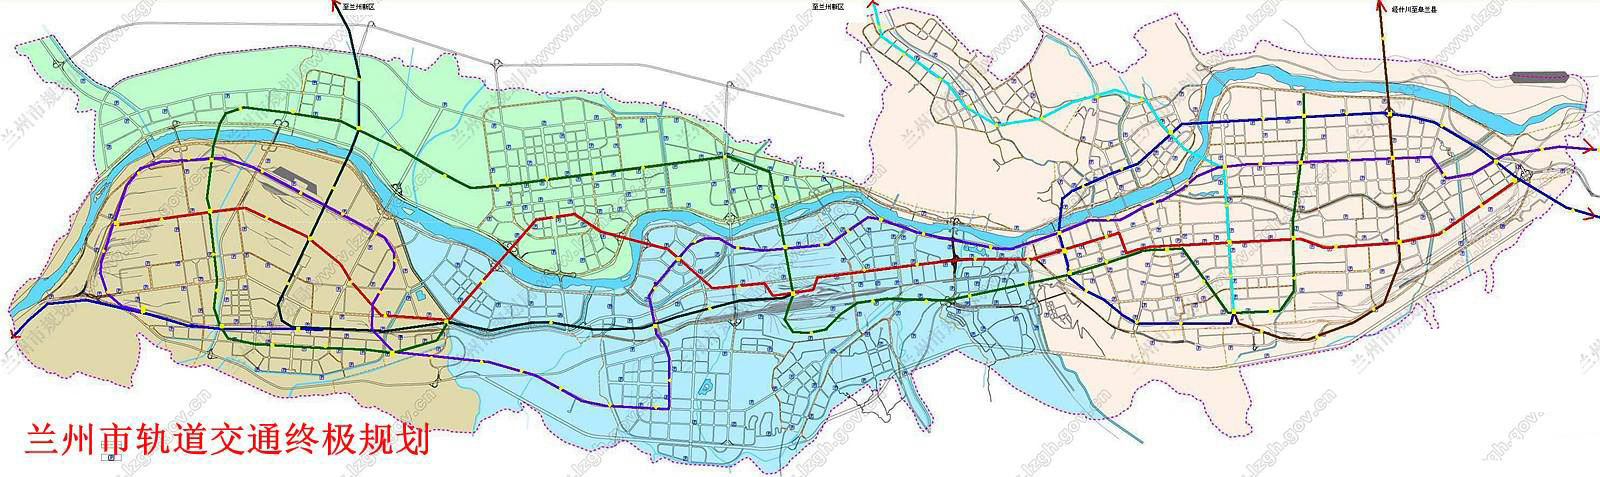 兰州市城市轨道交通近期建设规划通过批准